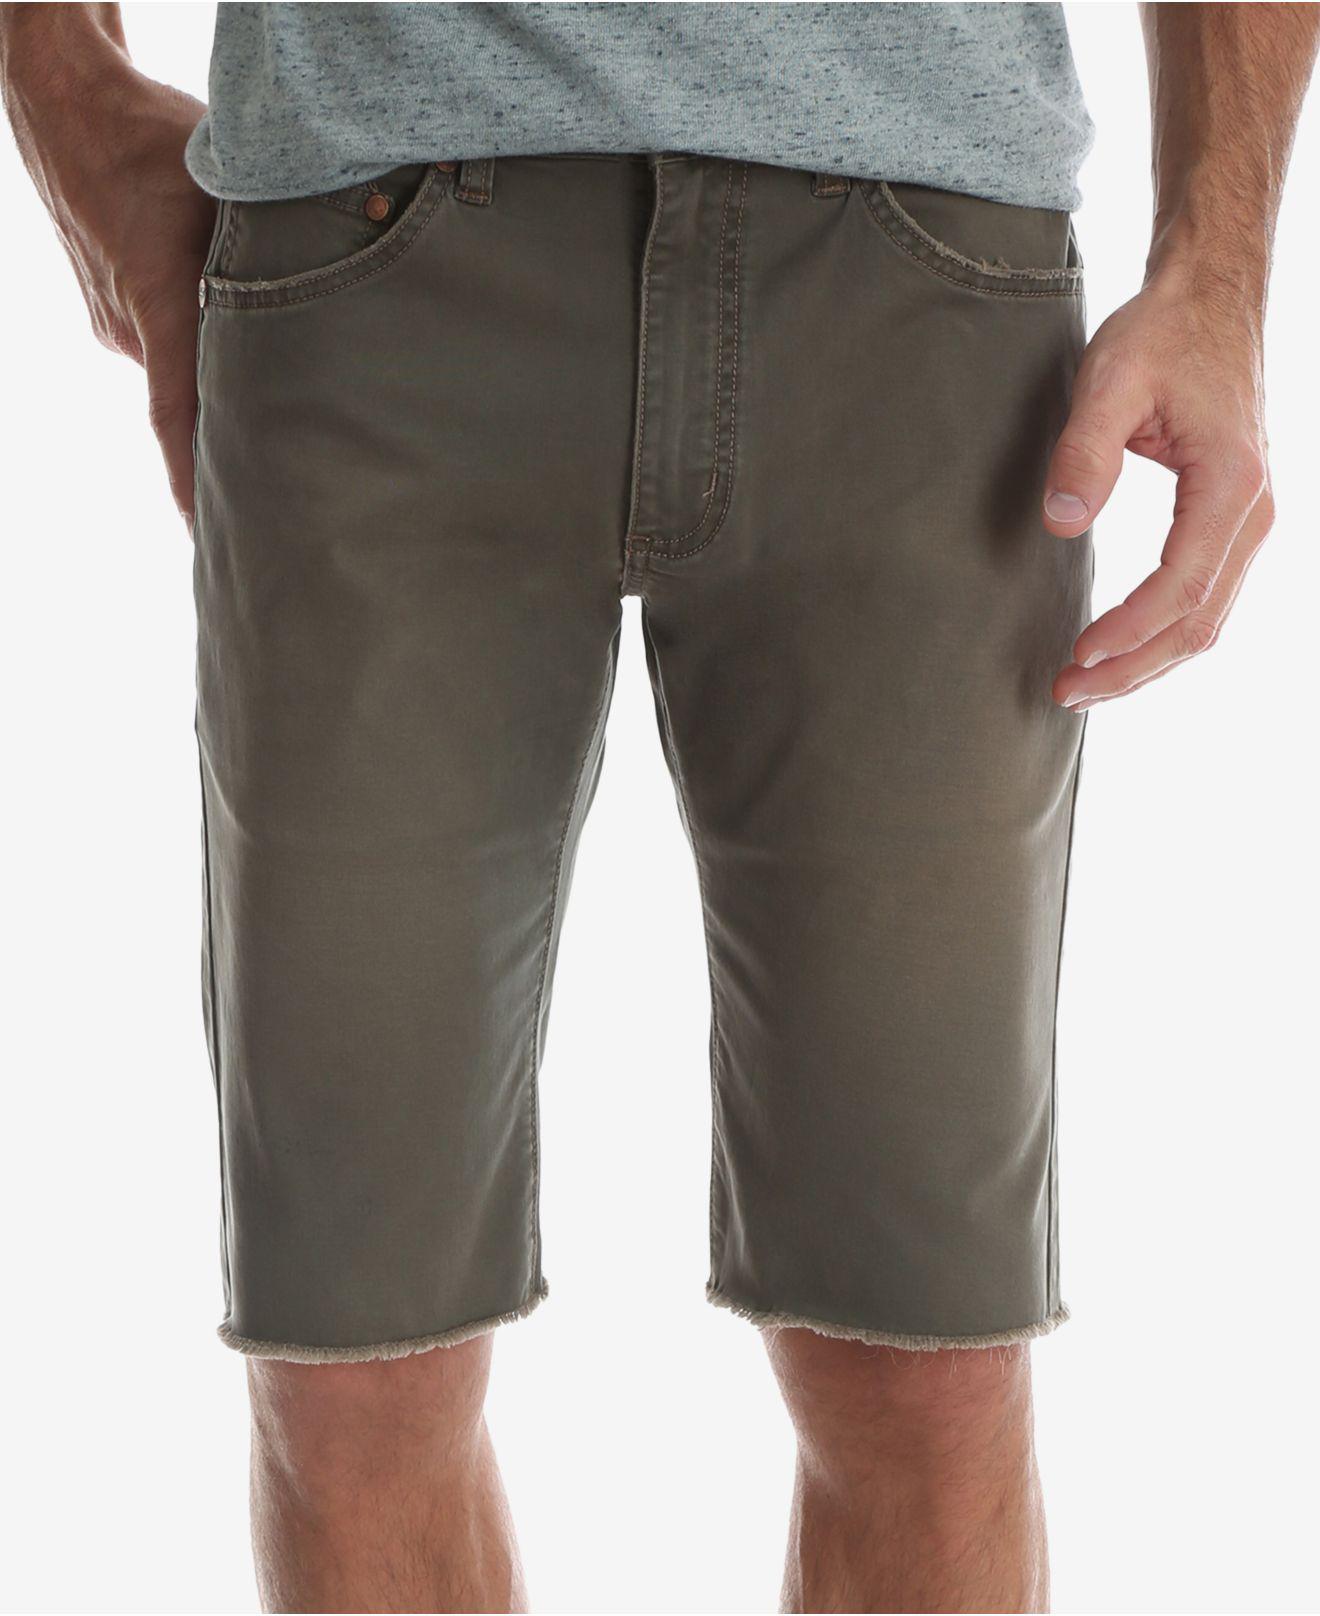 Buy > wrangler slim fit shorts > in stock